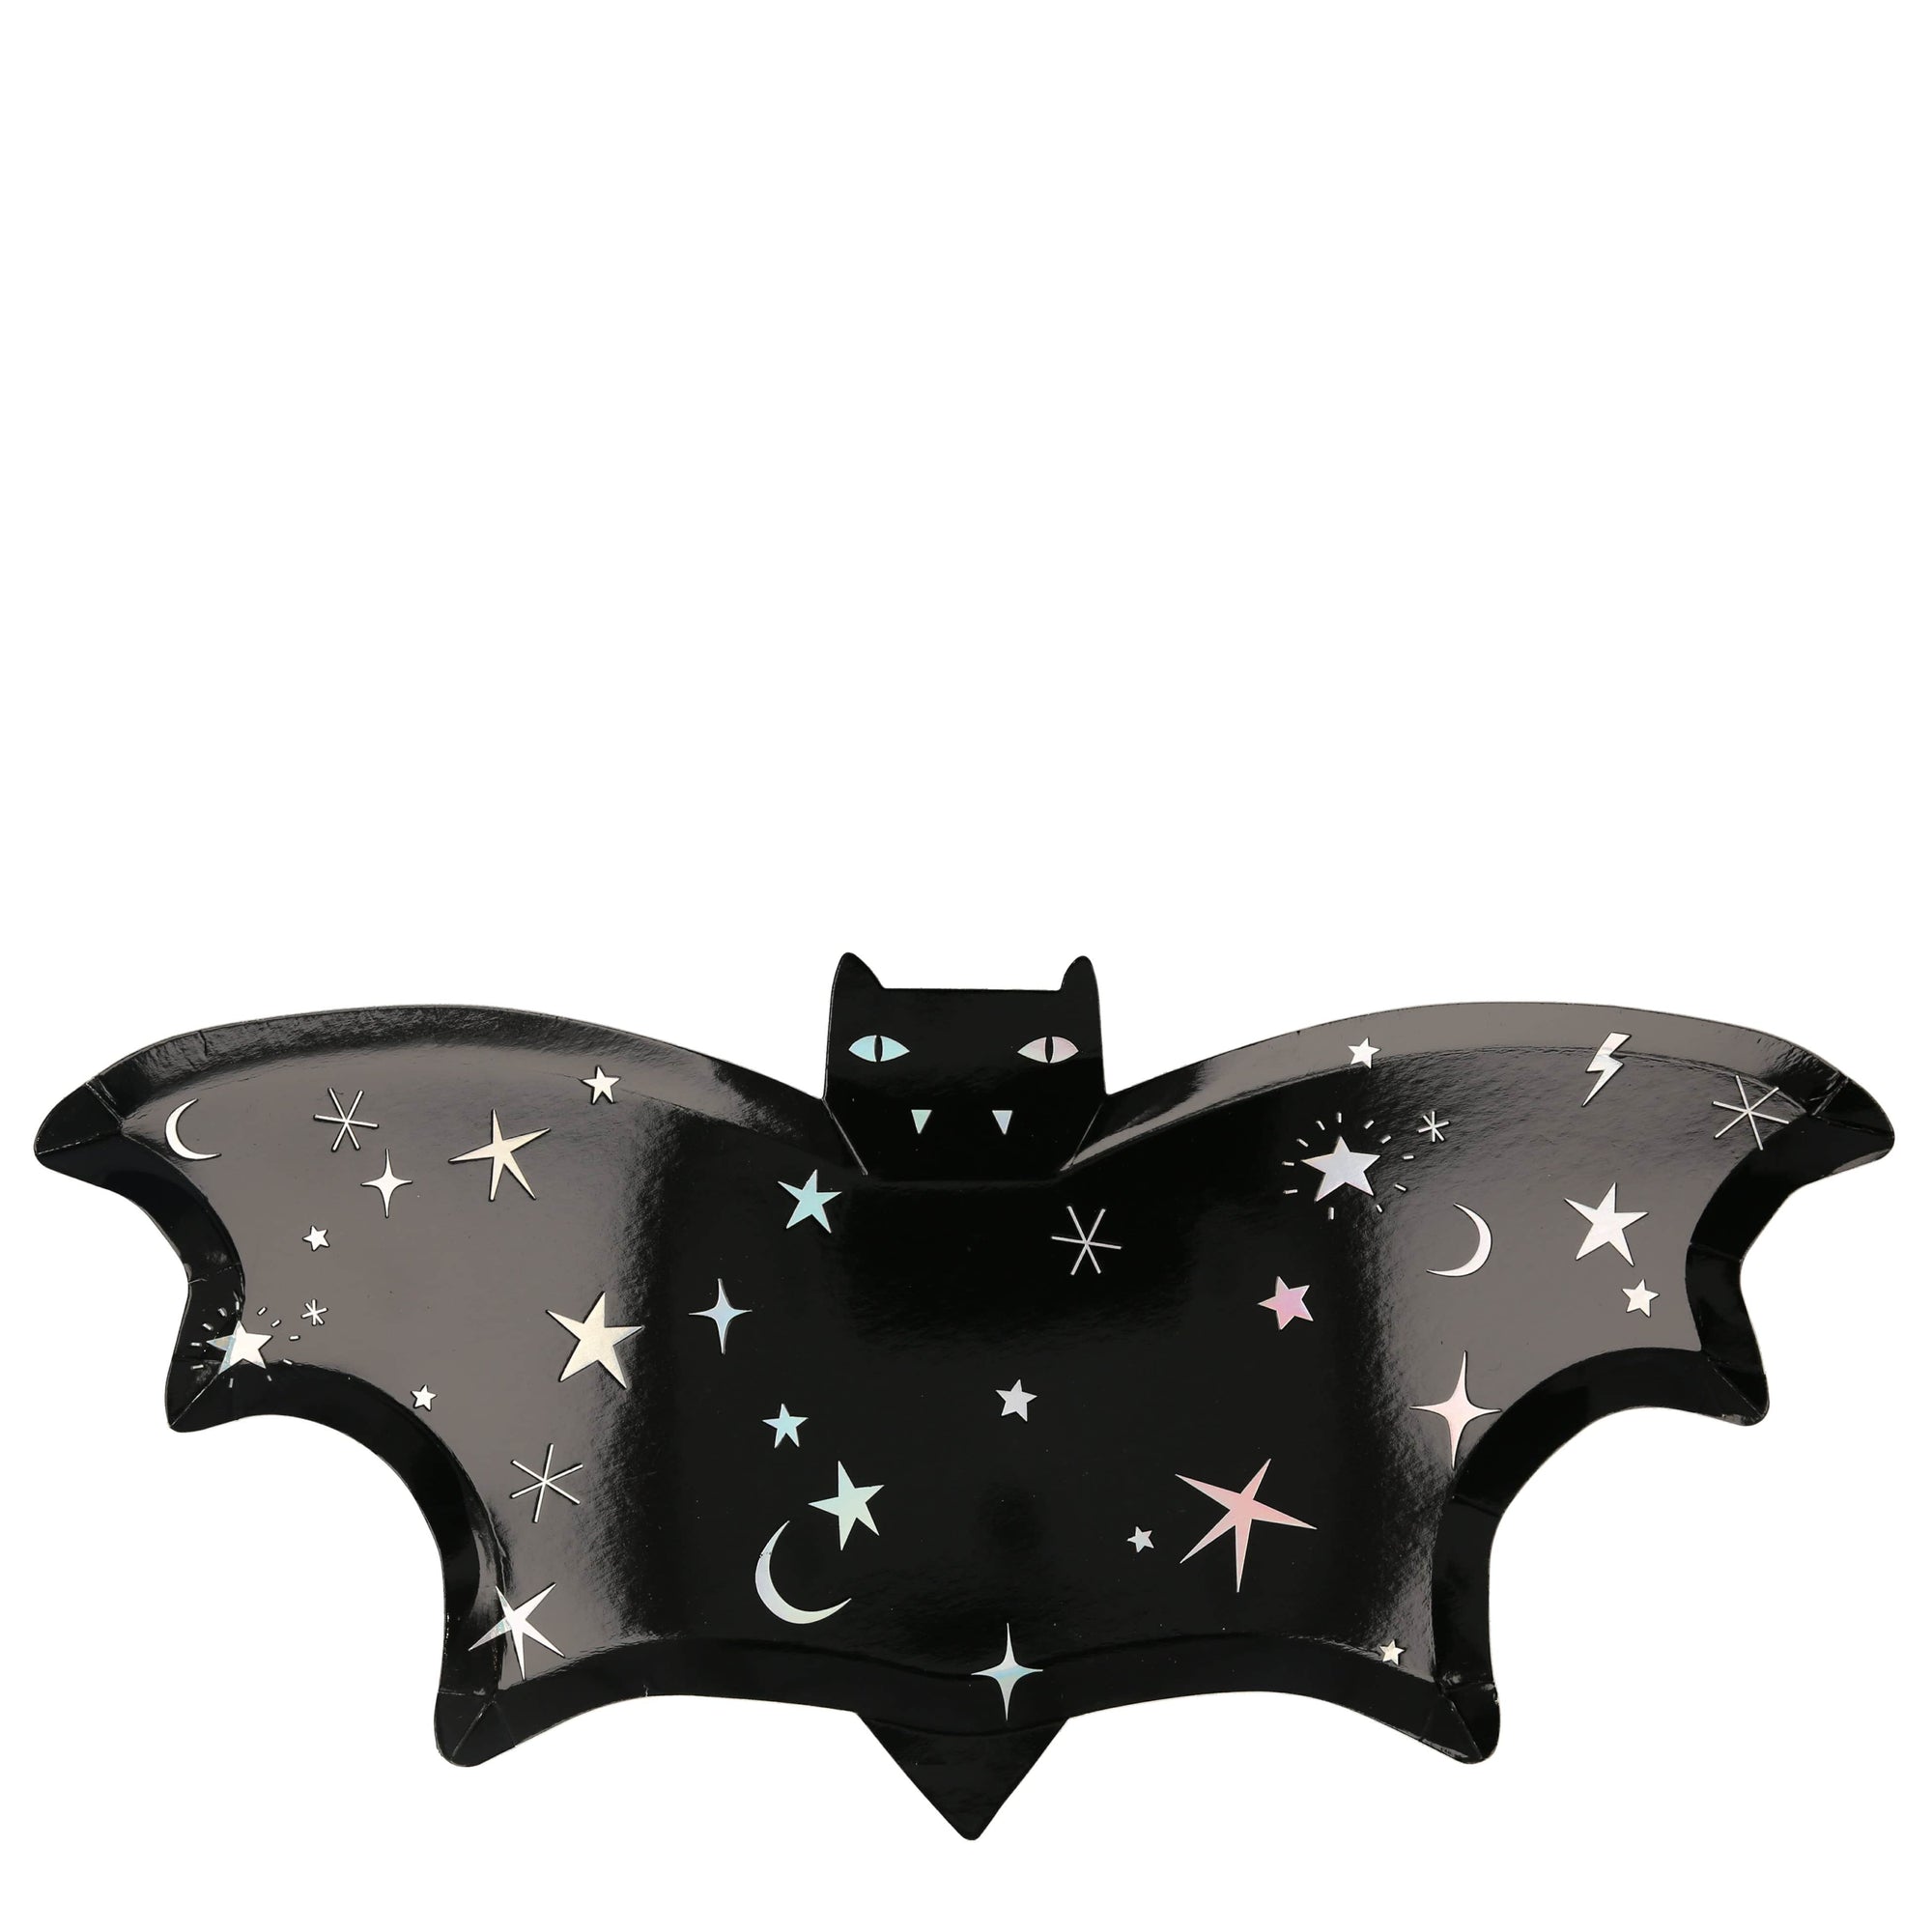 Die Cut Sparkle Bat Plates